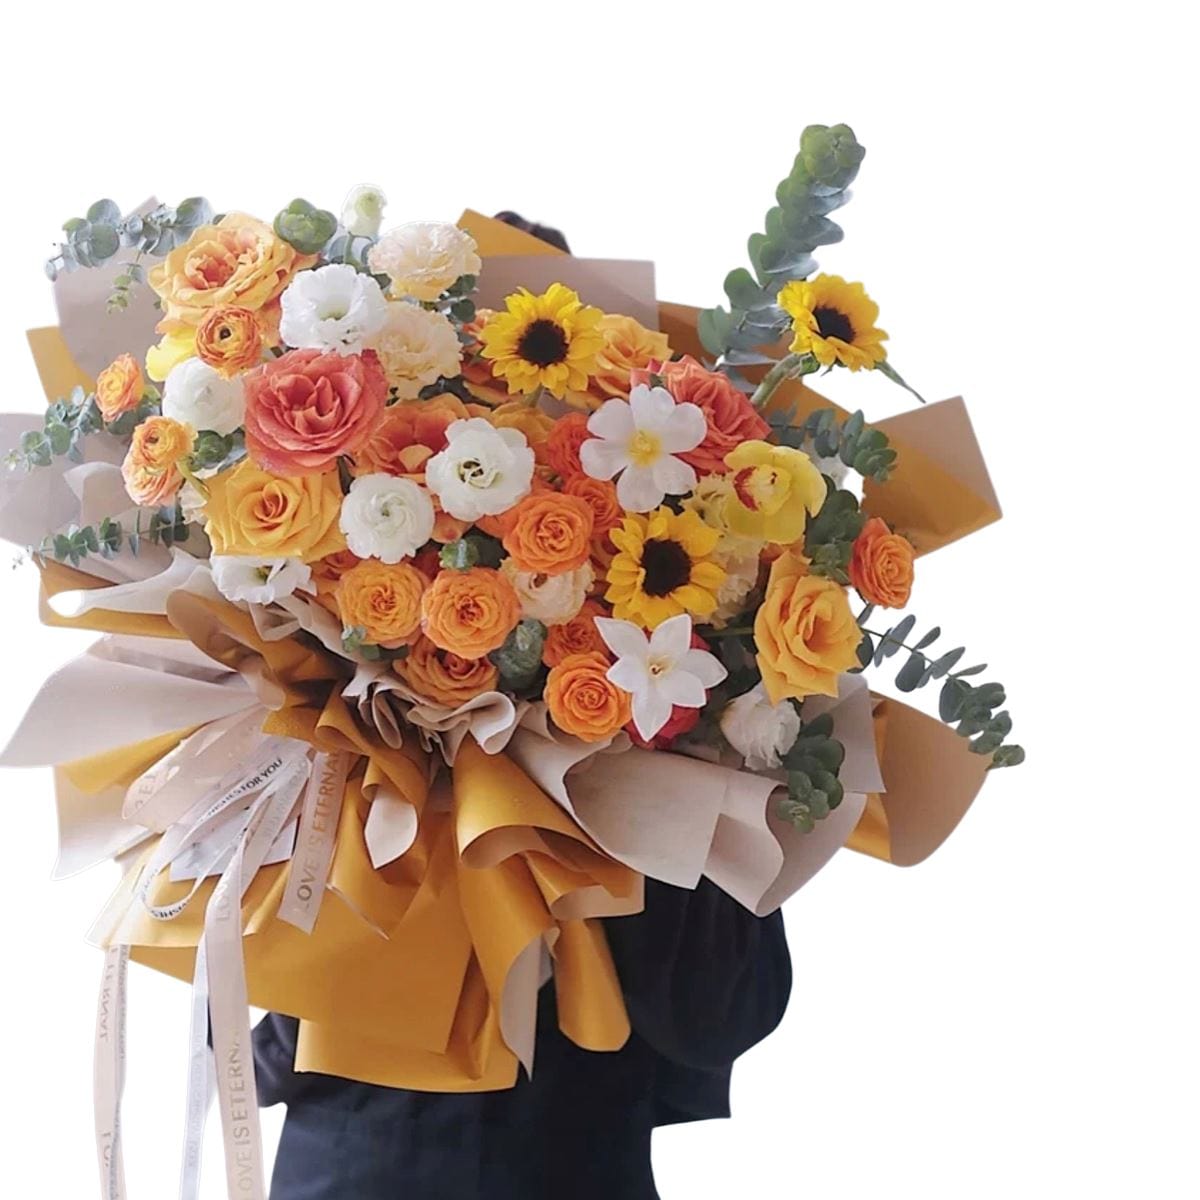 Sunrise Beauty - Flower - Preserved Flowers & Fresh Flower Florist Gift Store